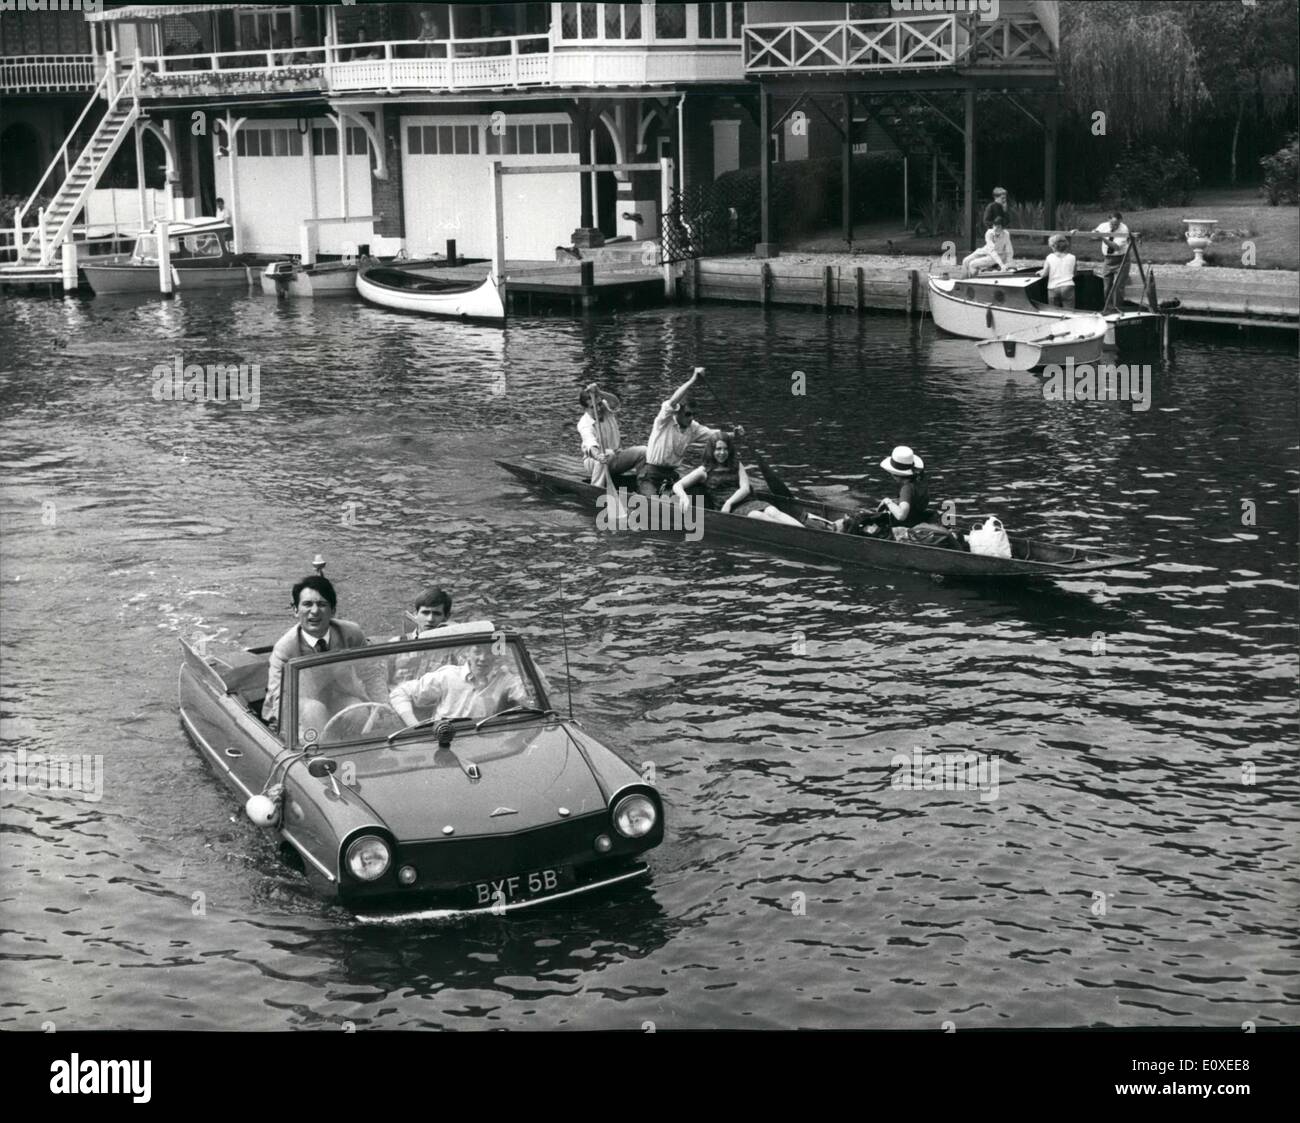 Juillet 07, 1966 - Royal Henley Regatta la méthode moderne de bateau au Henley : Photo montre bateaux à rames et à moteur sont la méthode habituelle de bateau au Henley, mais cette voiture amphibie a causé tout un émoi qu'elle plaughed sa parmi les métiers d'aujourd'hui. Banque D'Images